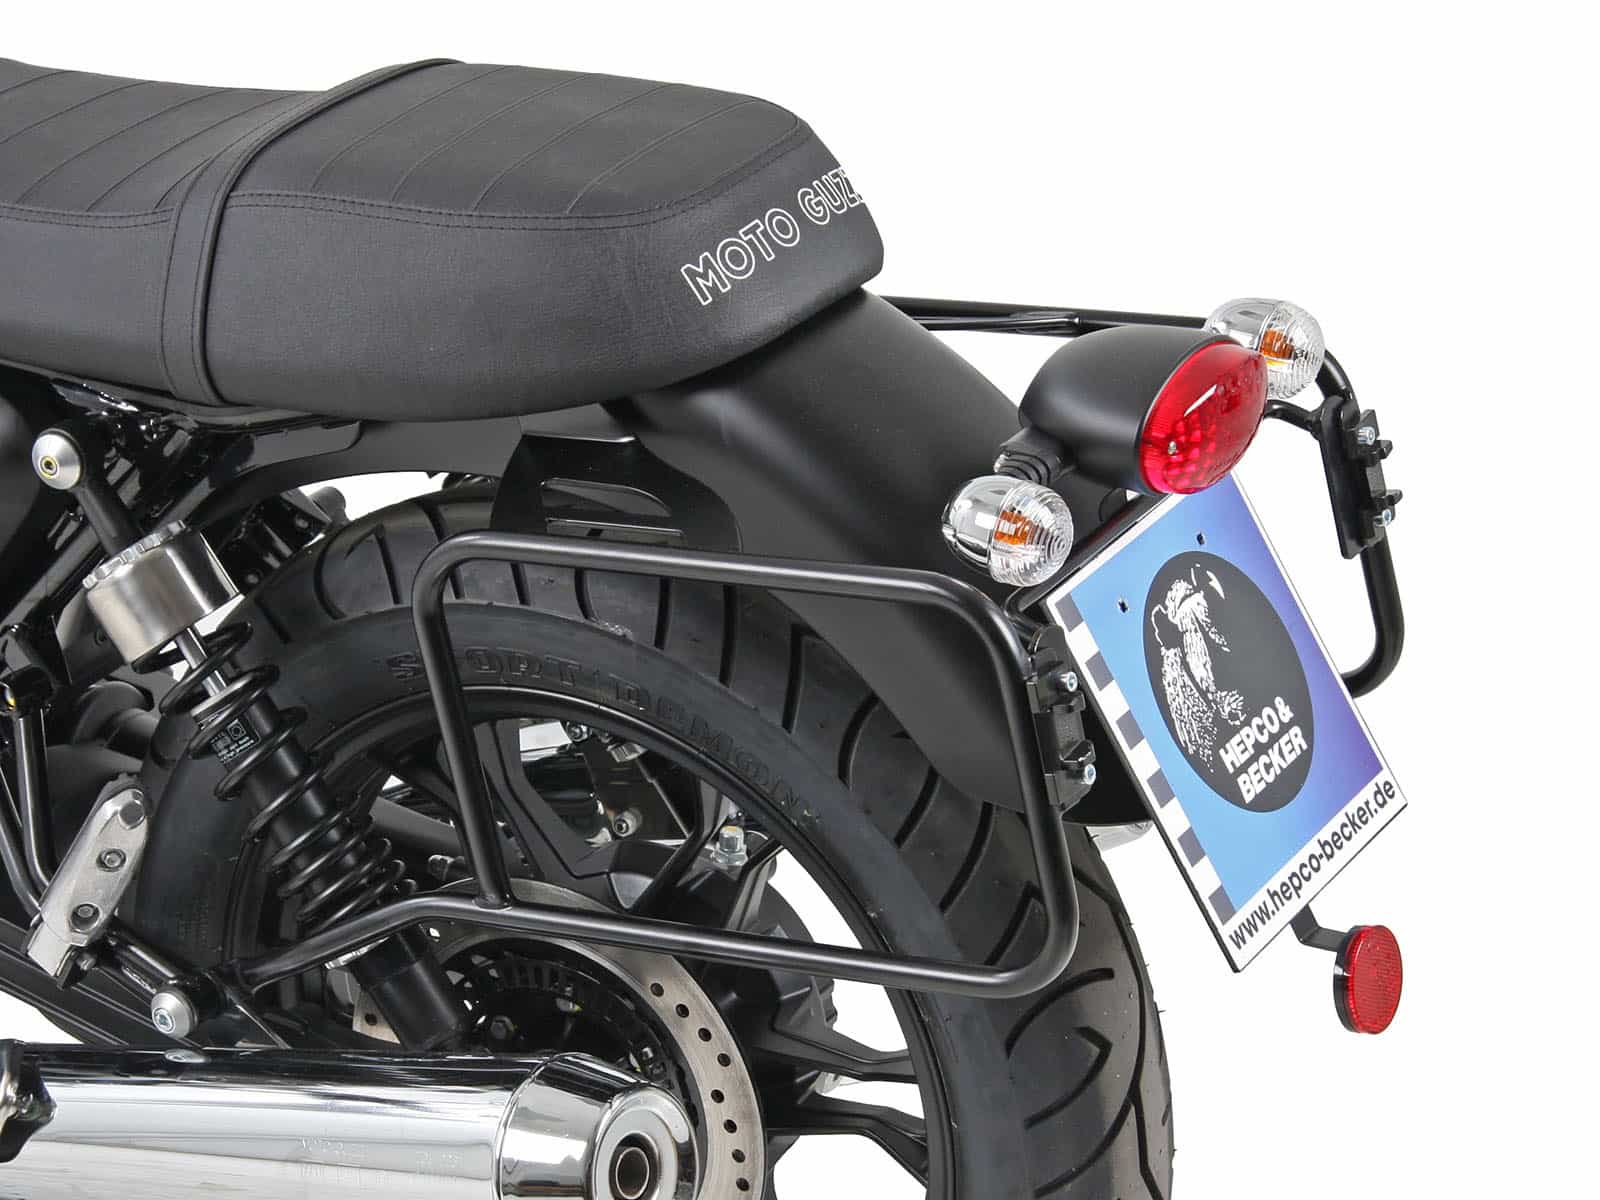 ベンチ 収納付 Hepco  Becker サイドキャリア ブラック Moto Guzzi V Classic Special  バイク用ボックス